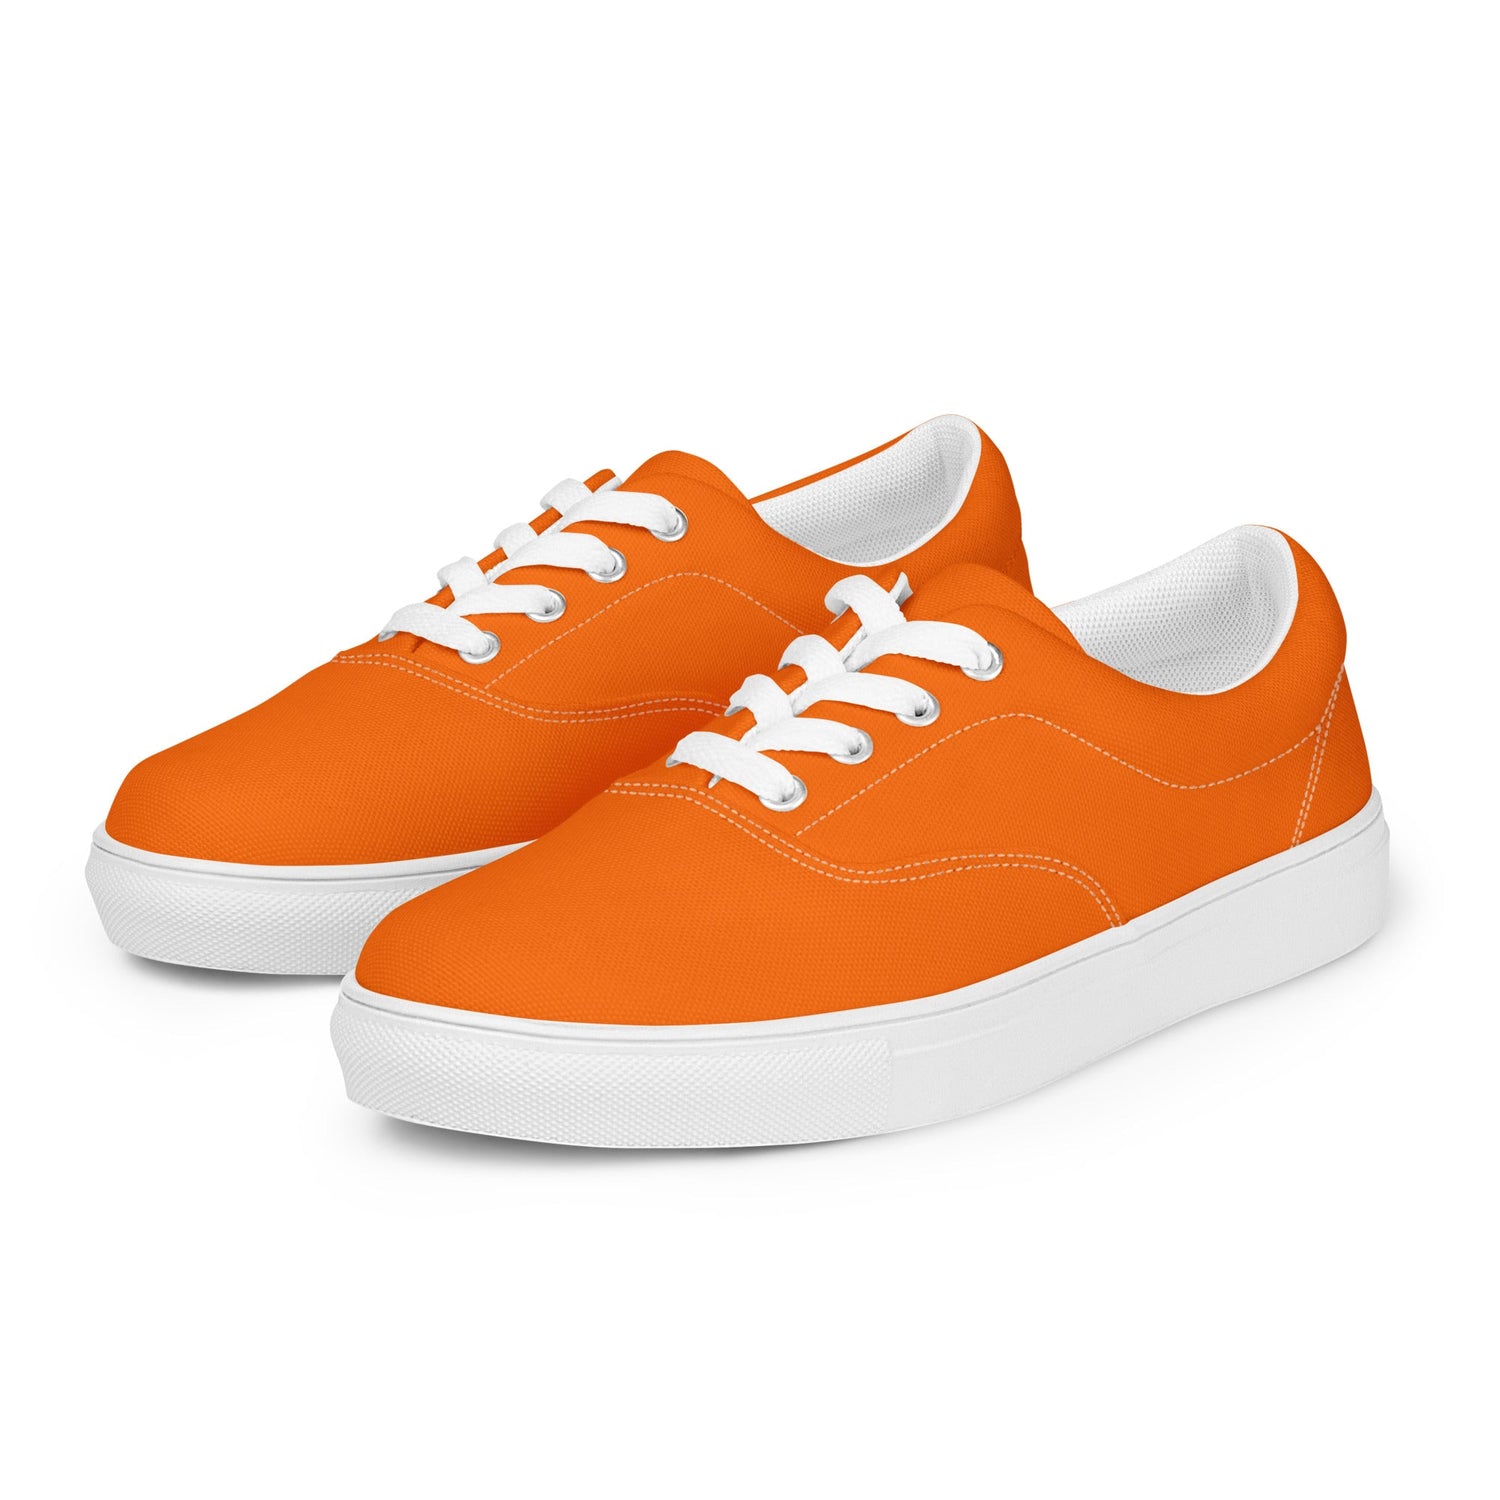 klasneakers Women’s lace-up canvas shoes - Electric Orange